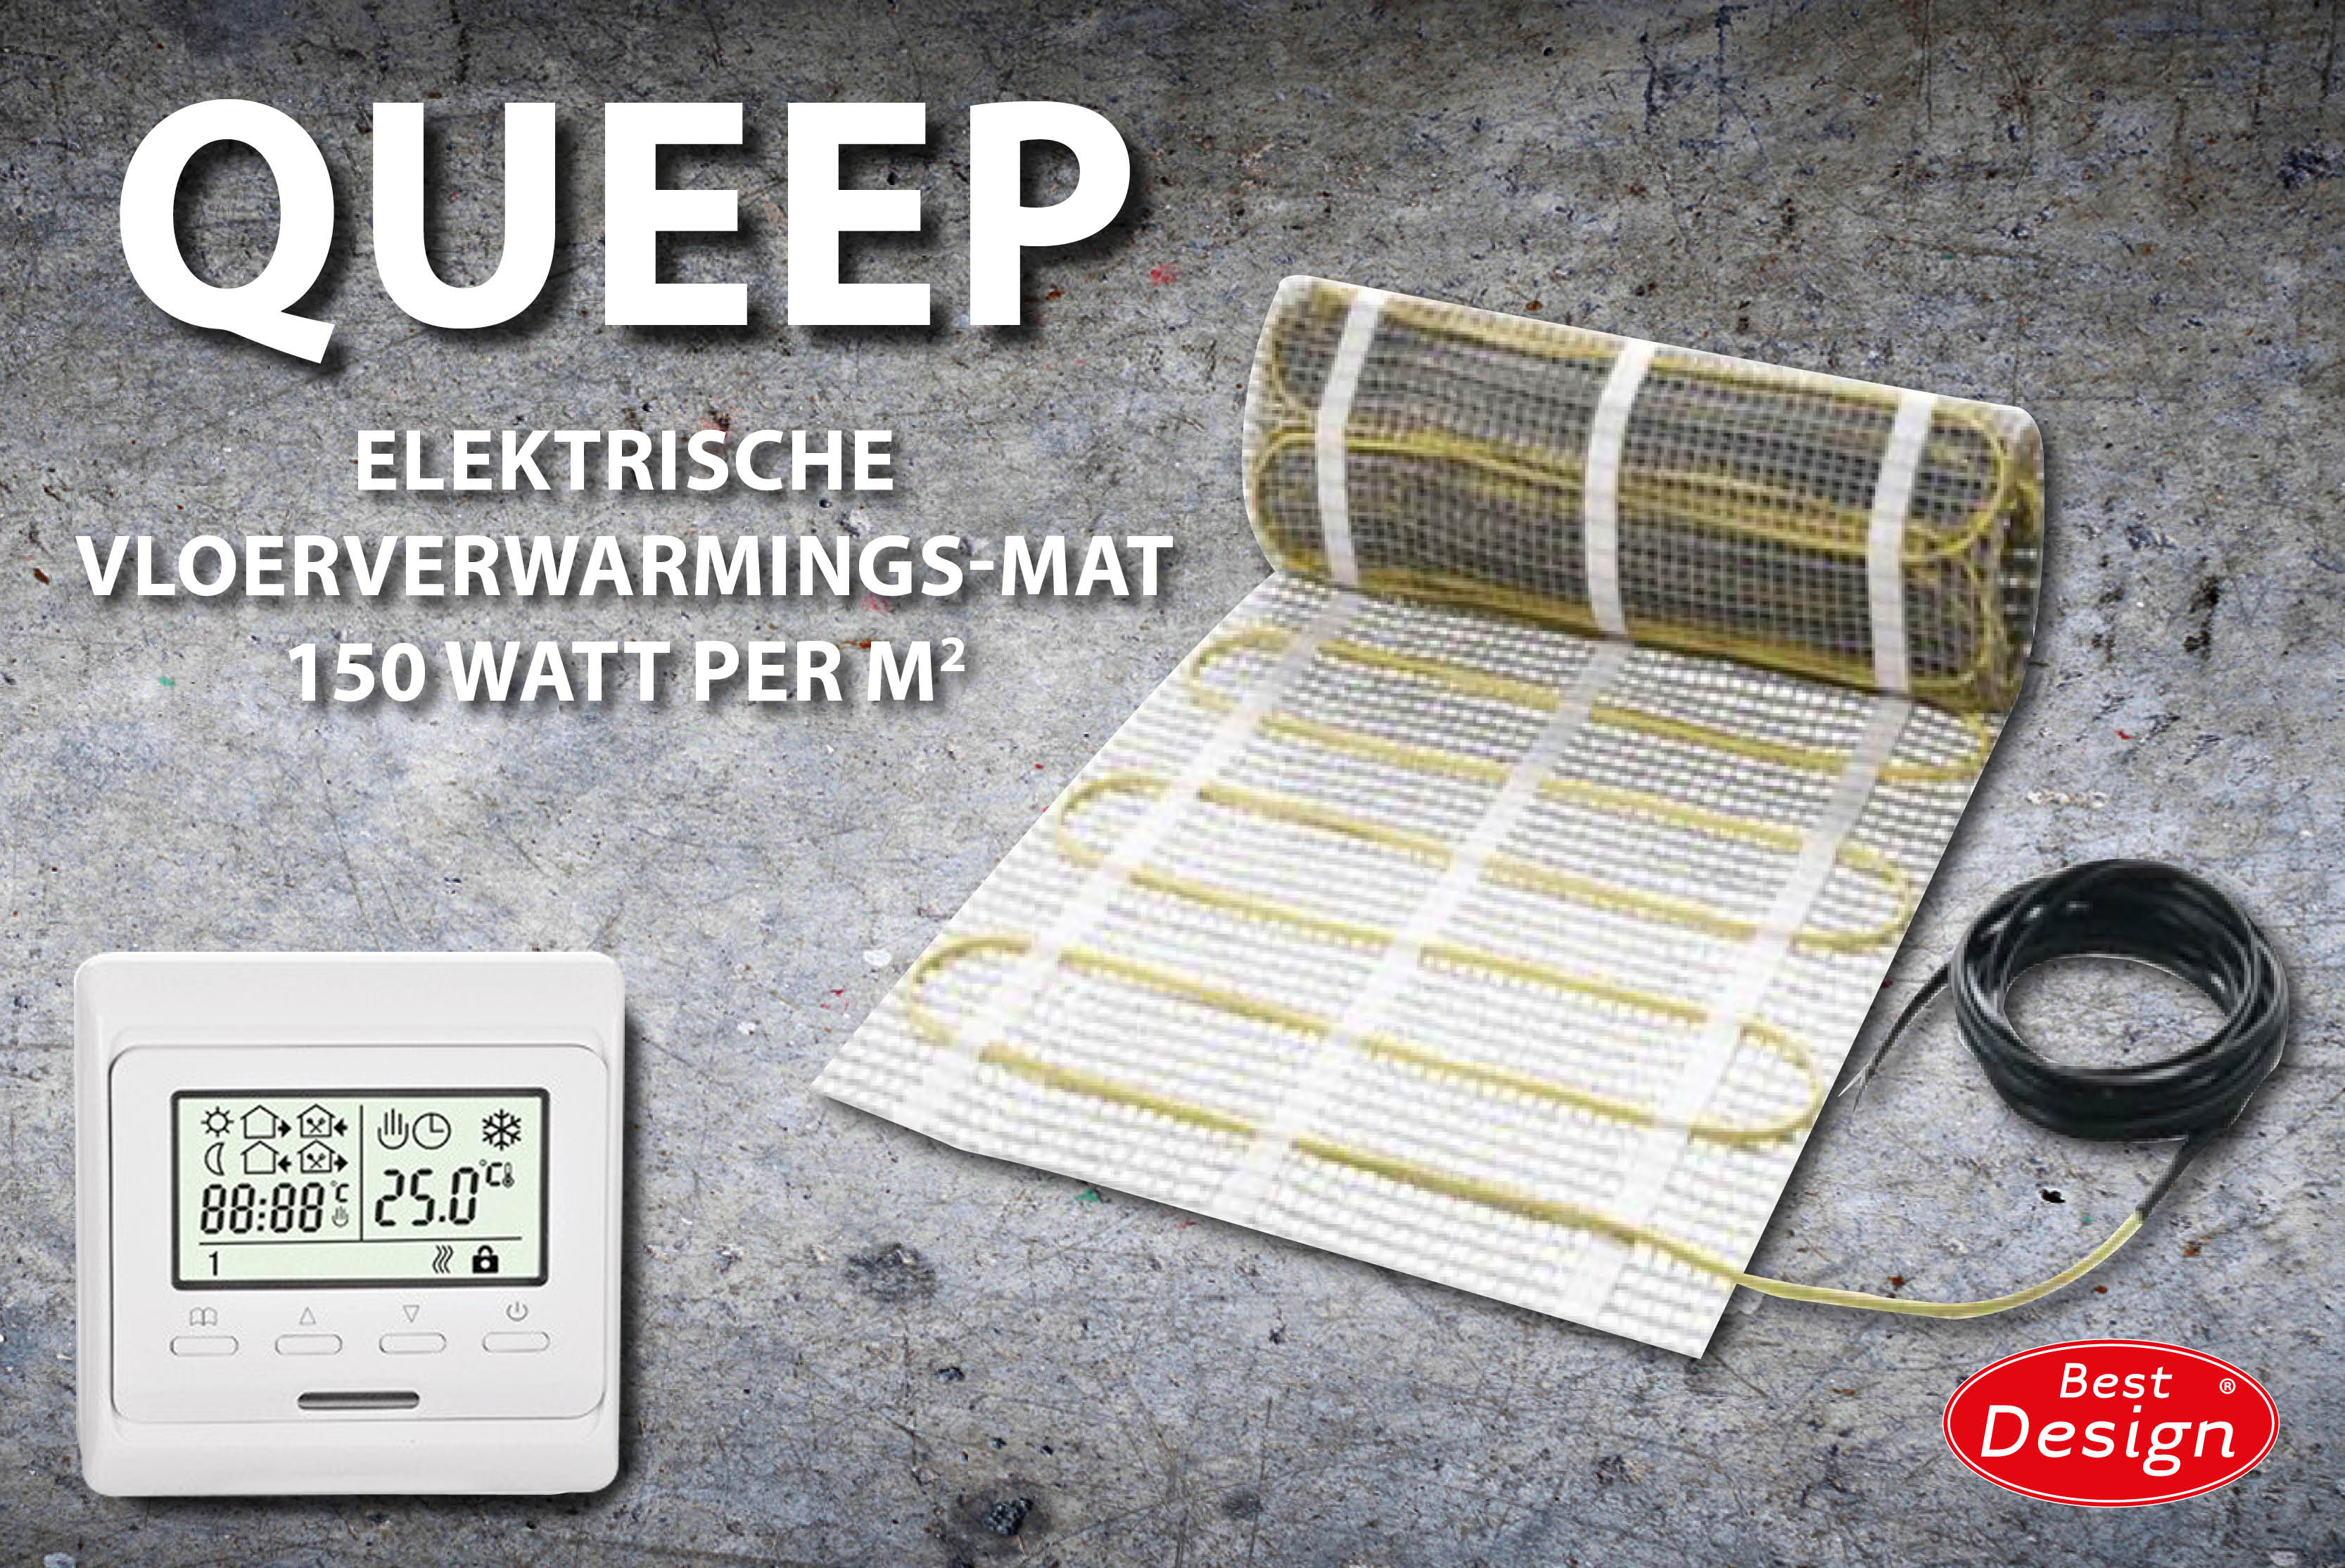 Best-Design Queep elektrische vloerverwarmings-mat 7.0 m2 Top Merken Winkel